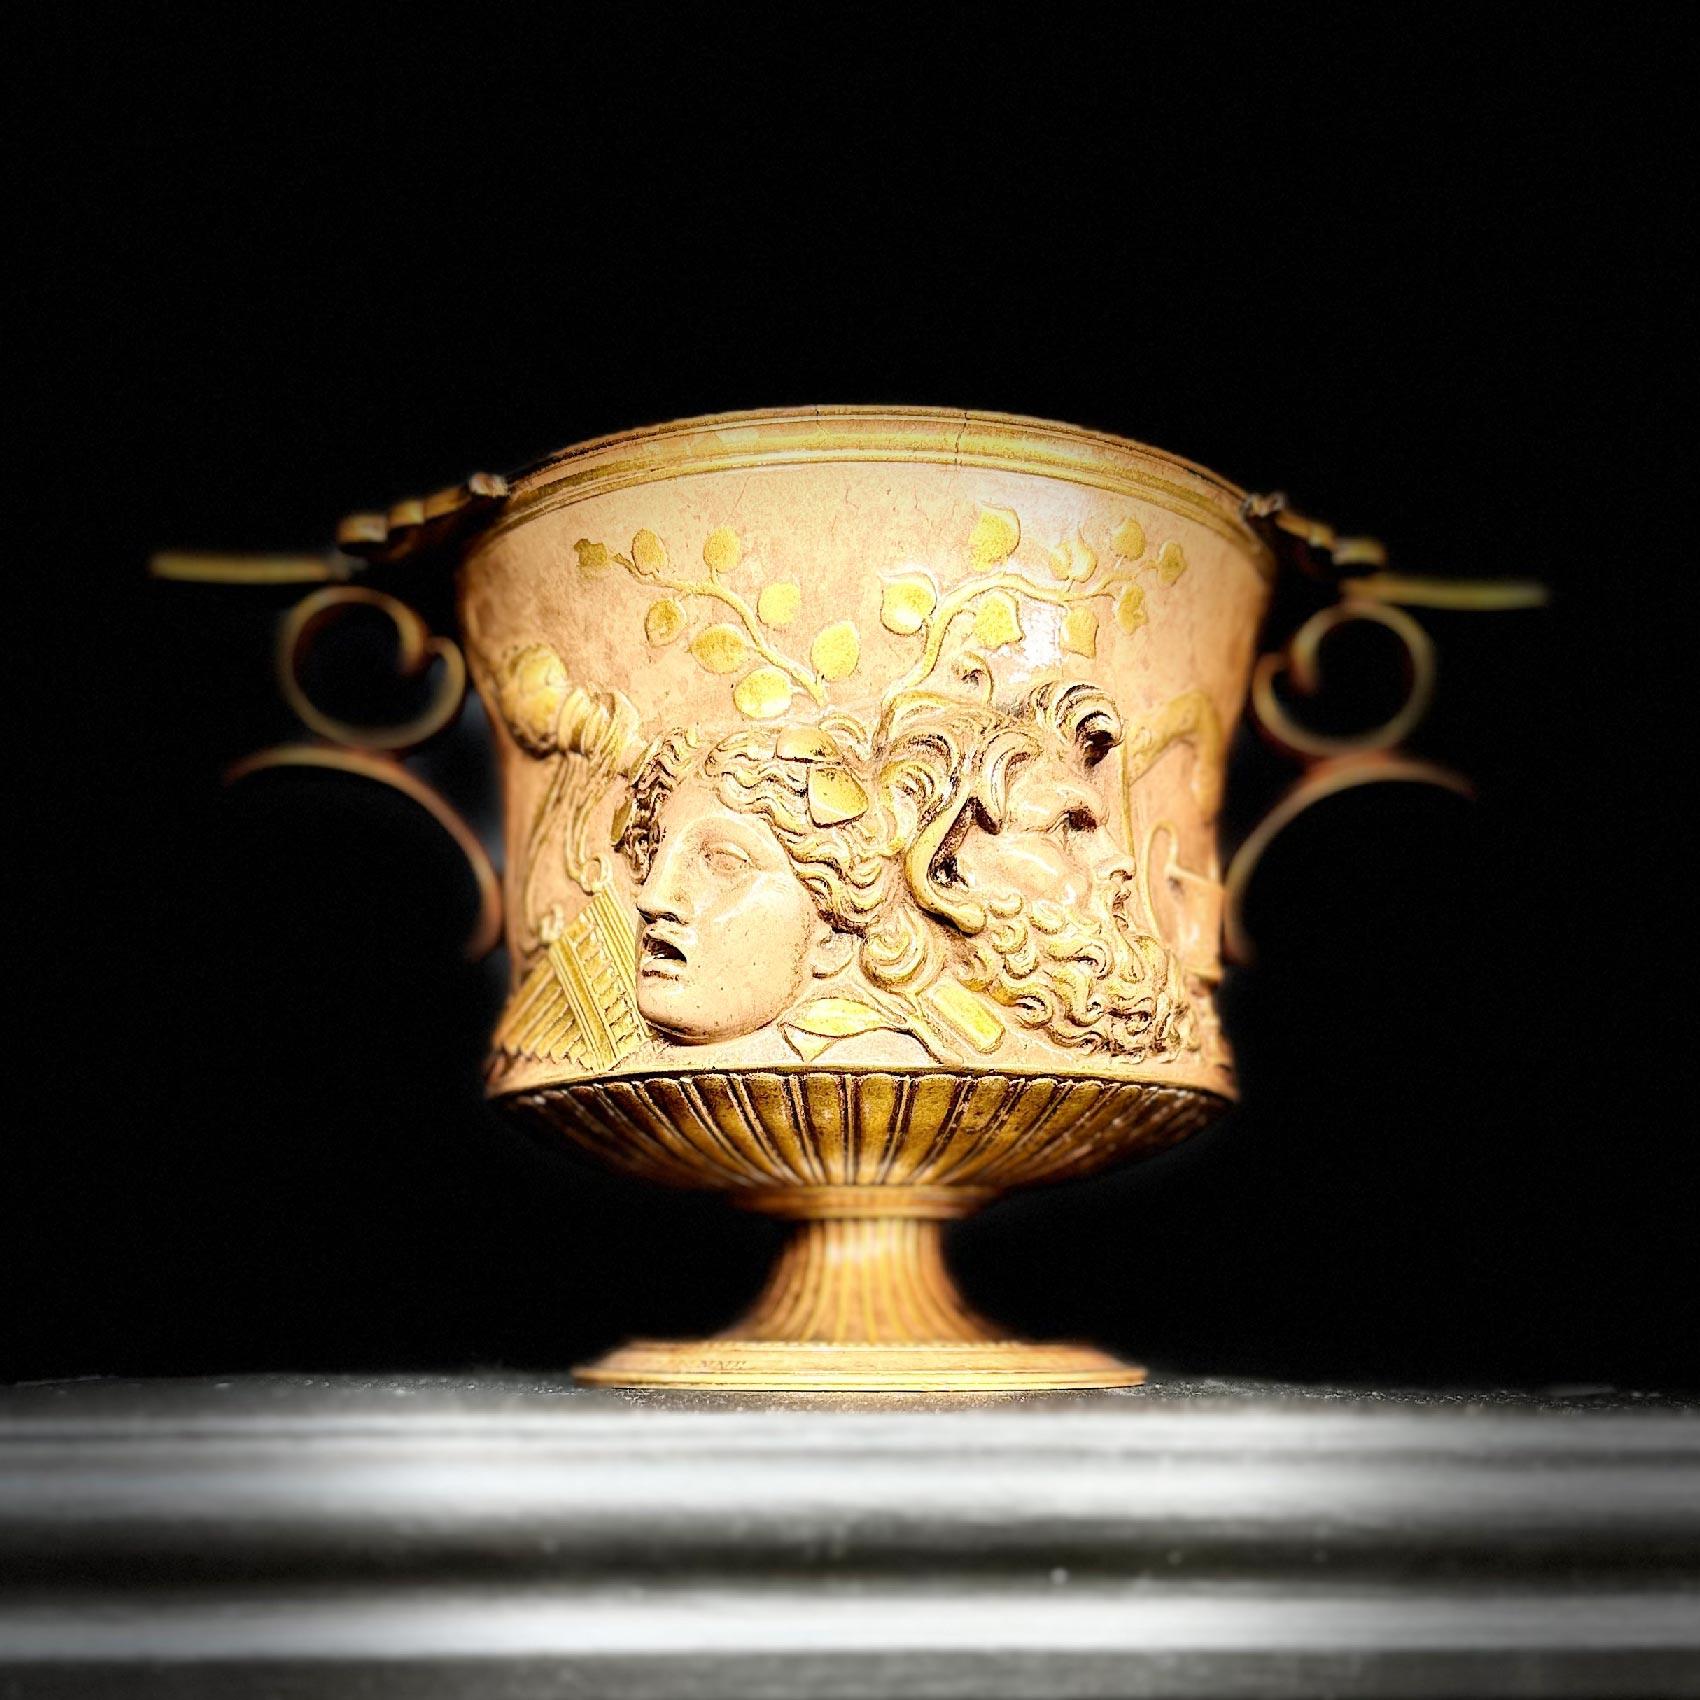 Gloriosa e increíblemente rara pareja de urnas bajas de bronce dorado del siglo XIX modeladas según el jarrón Borghese original de Giovanni Zoffoli  (c1785-1845) fundida por Barbedienne en el tercer cuarto del siglo XIX.  14,5 cm de alto y 24,5 cm